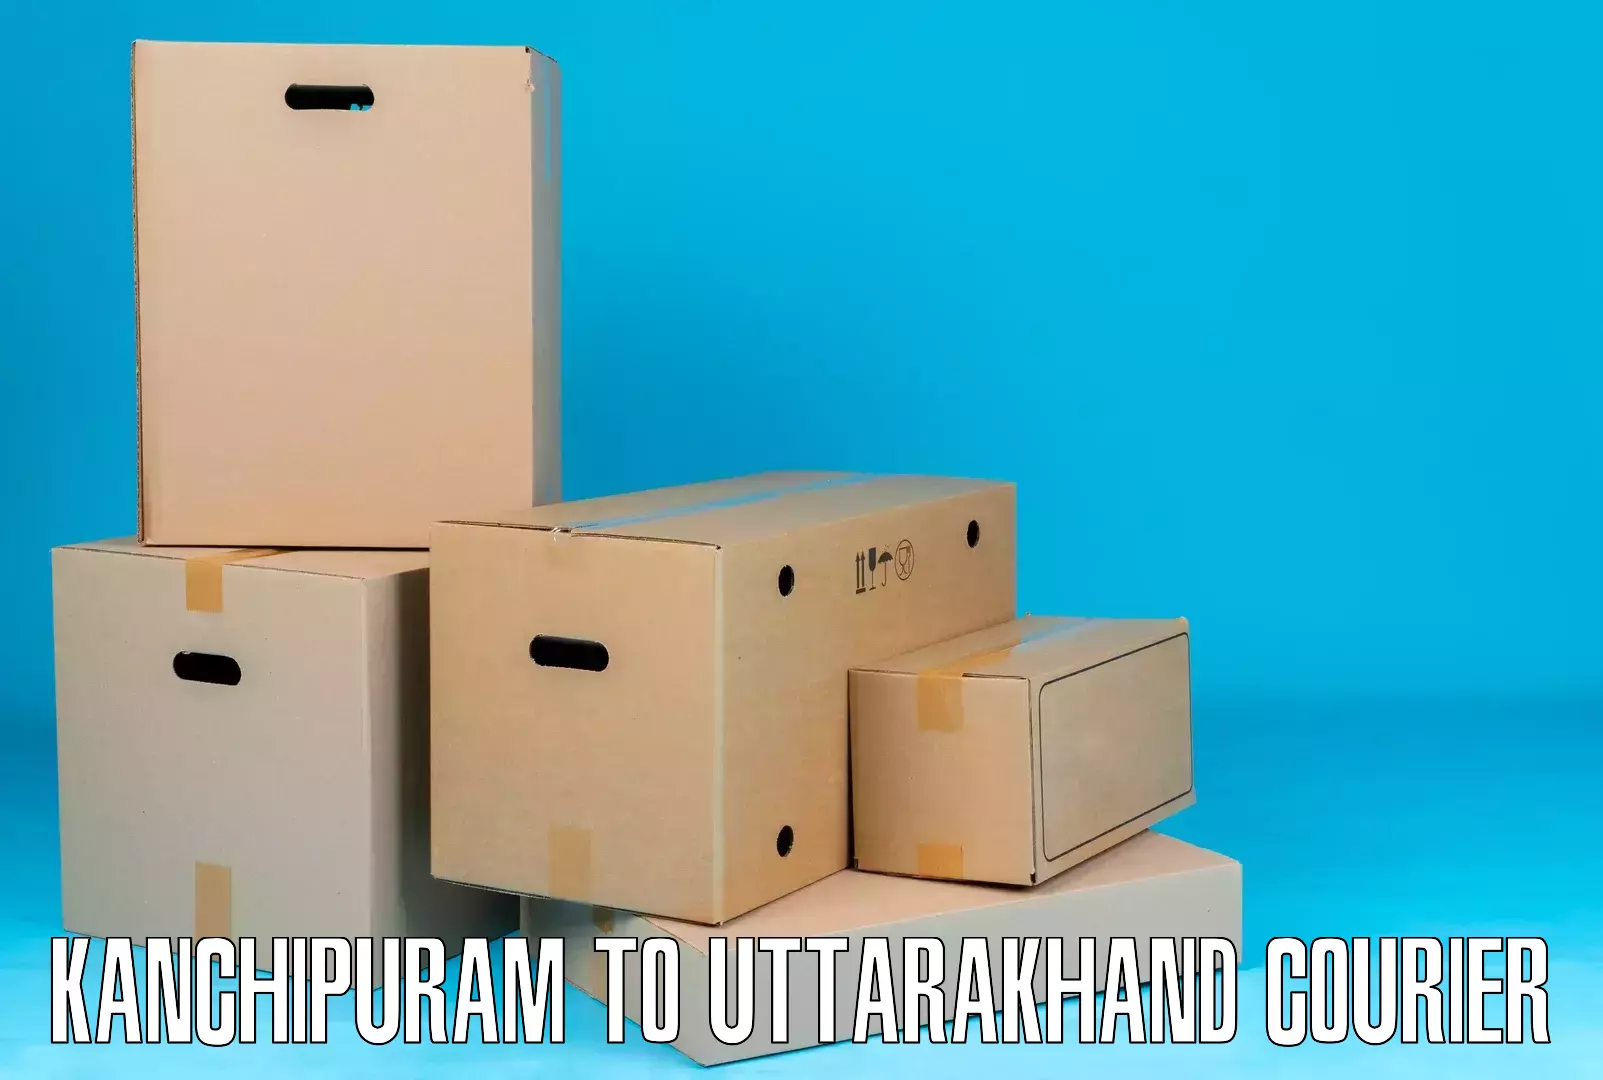 Subscription-based courier Kanchipuram to Uttarakhand